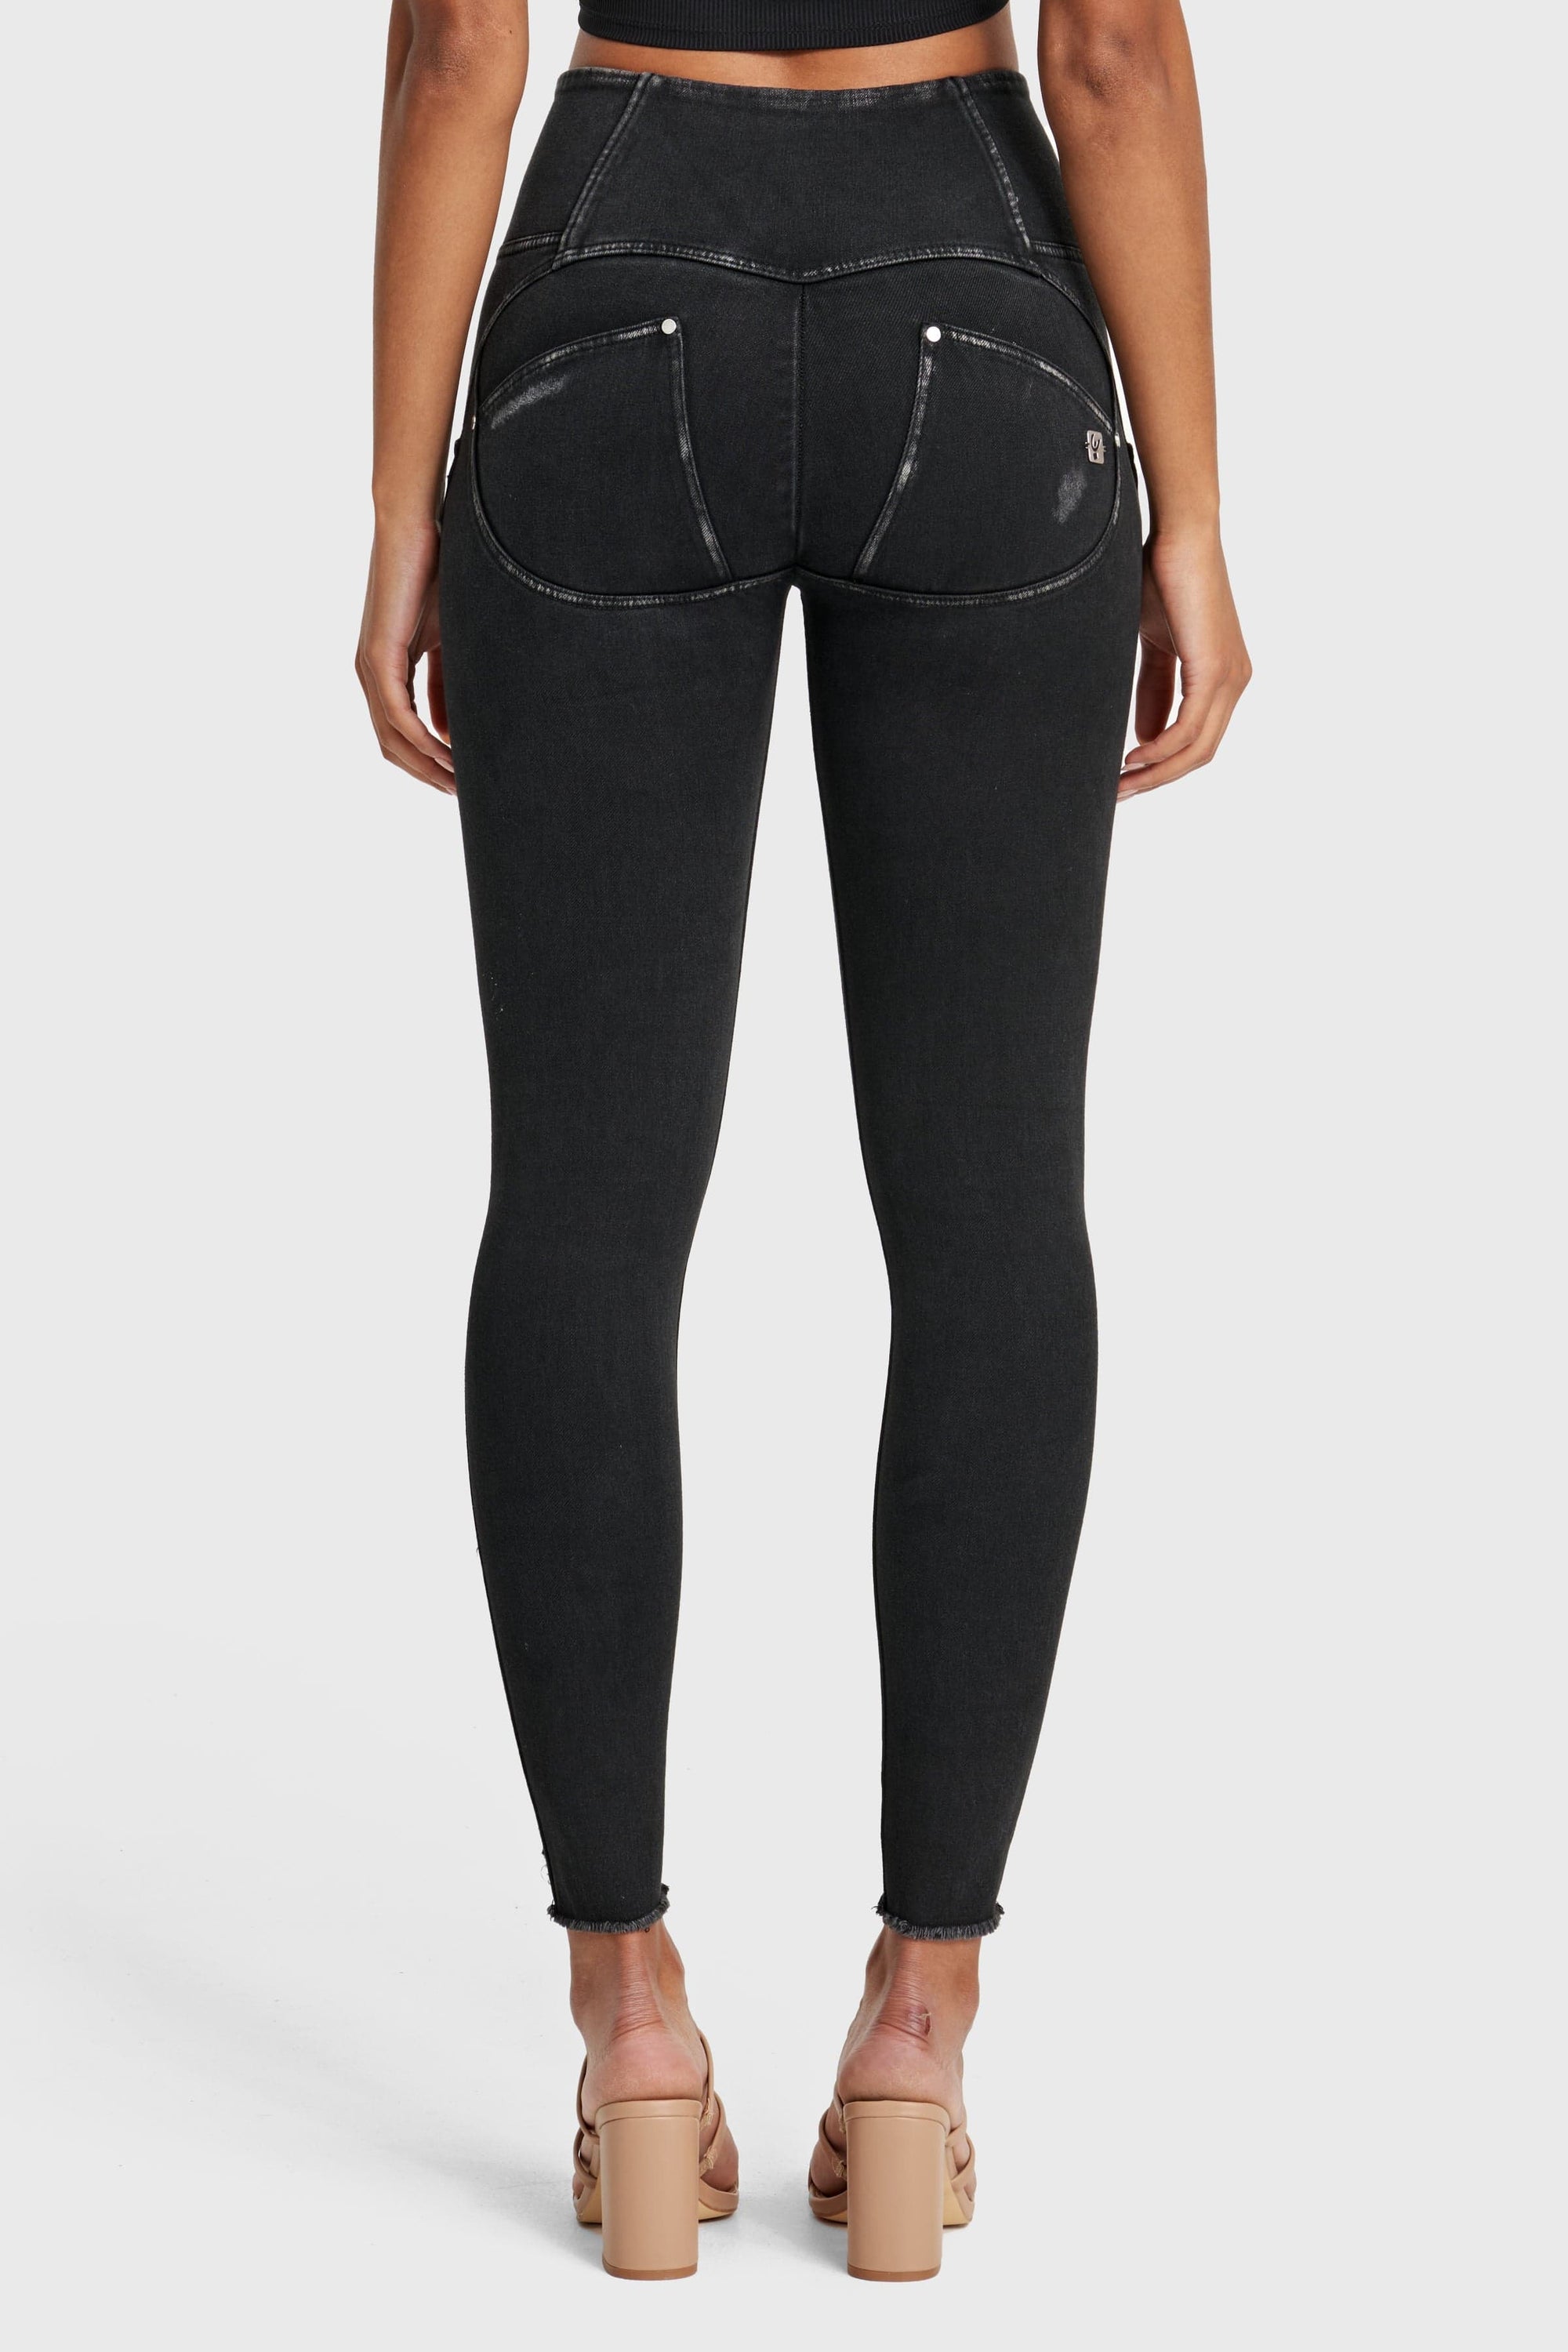 WR.UP® Snug Ripped Jeans - Cintura alta - Largo completo - Negro revestido + Costuras negras  8